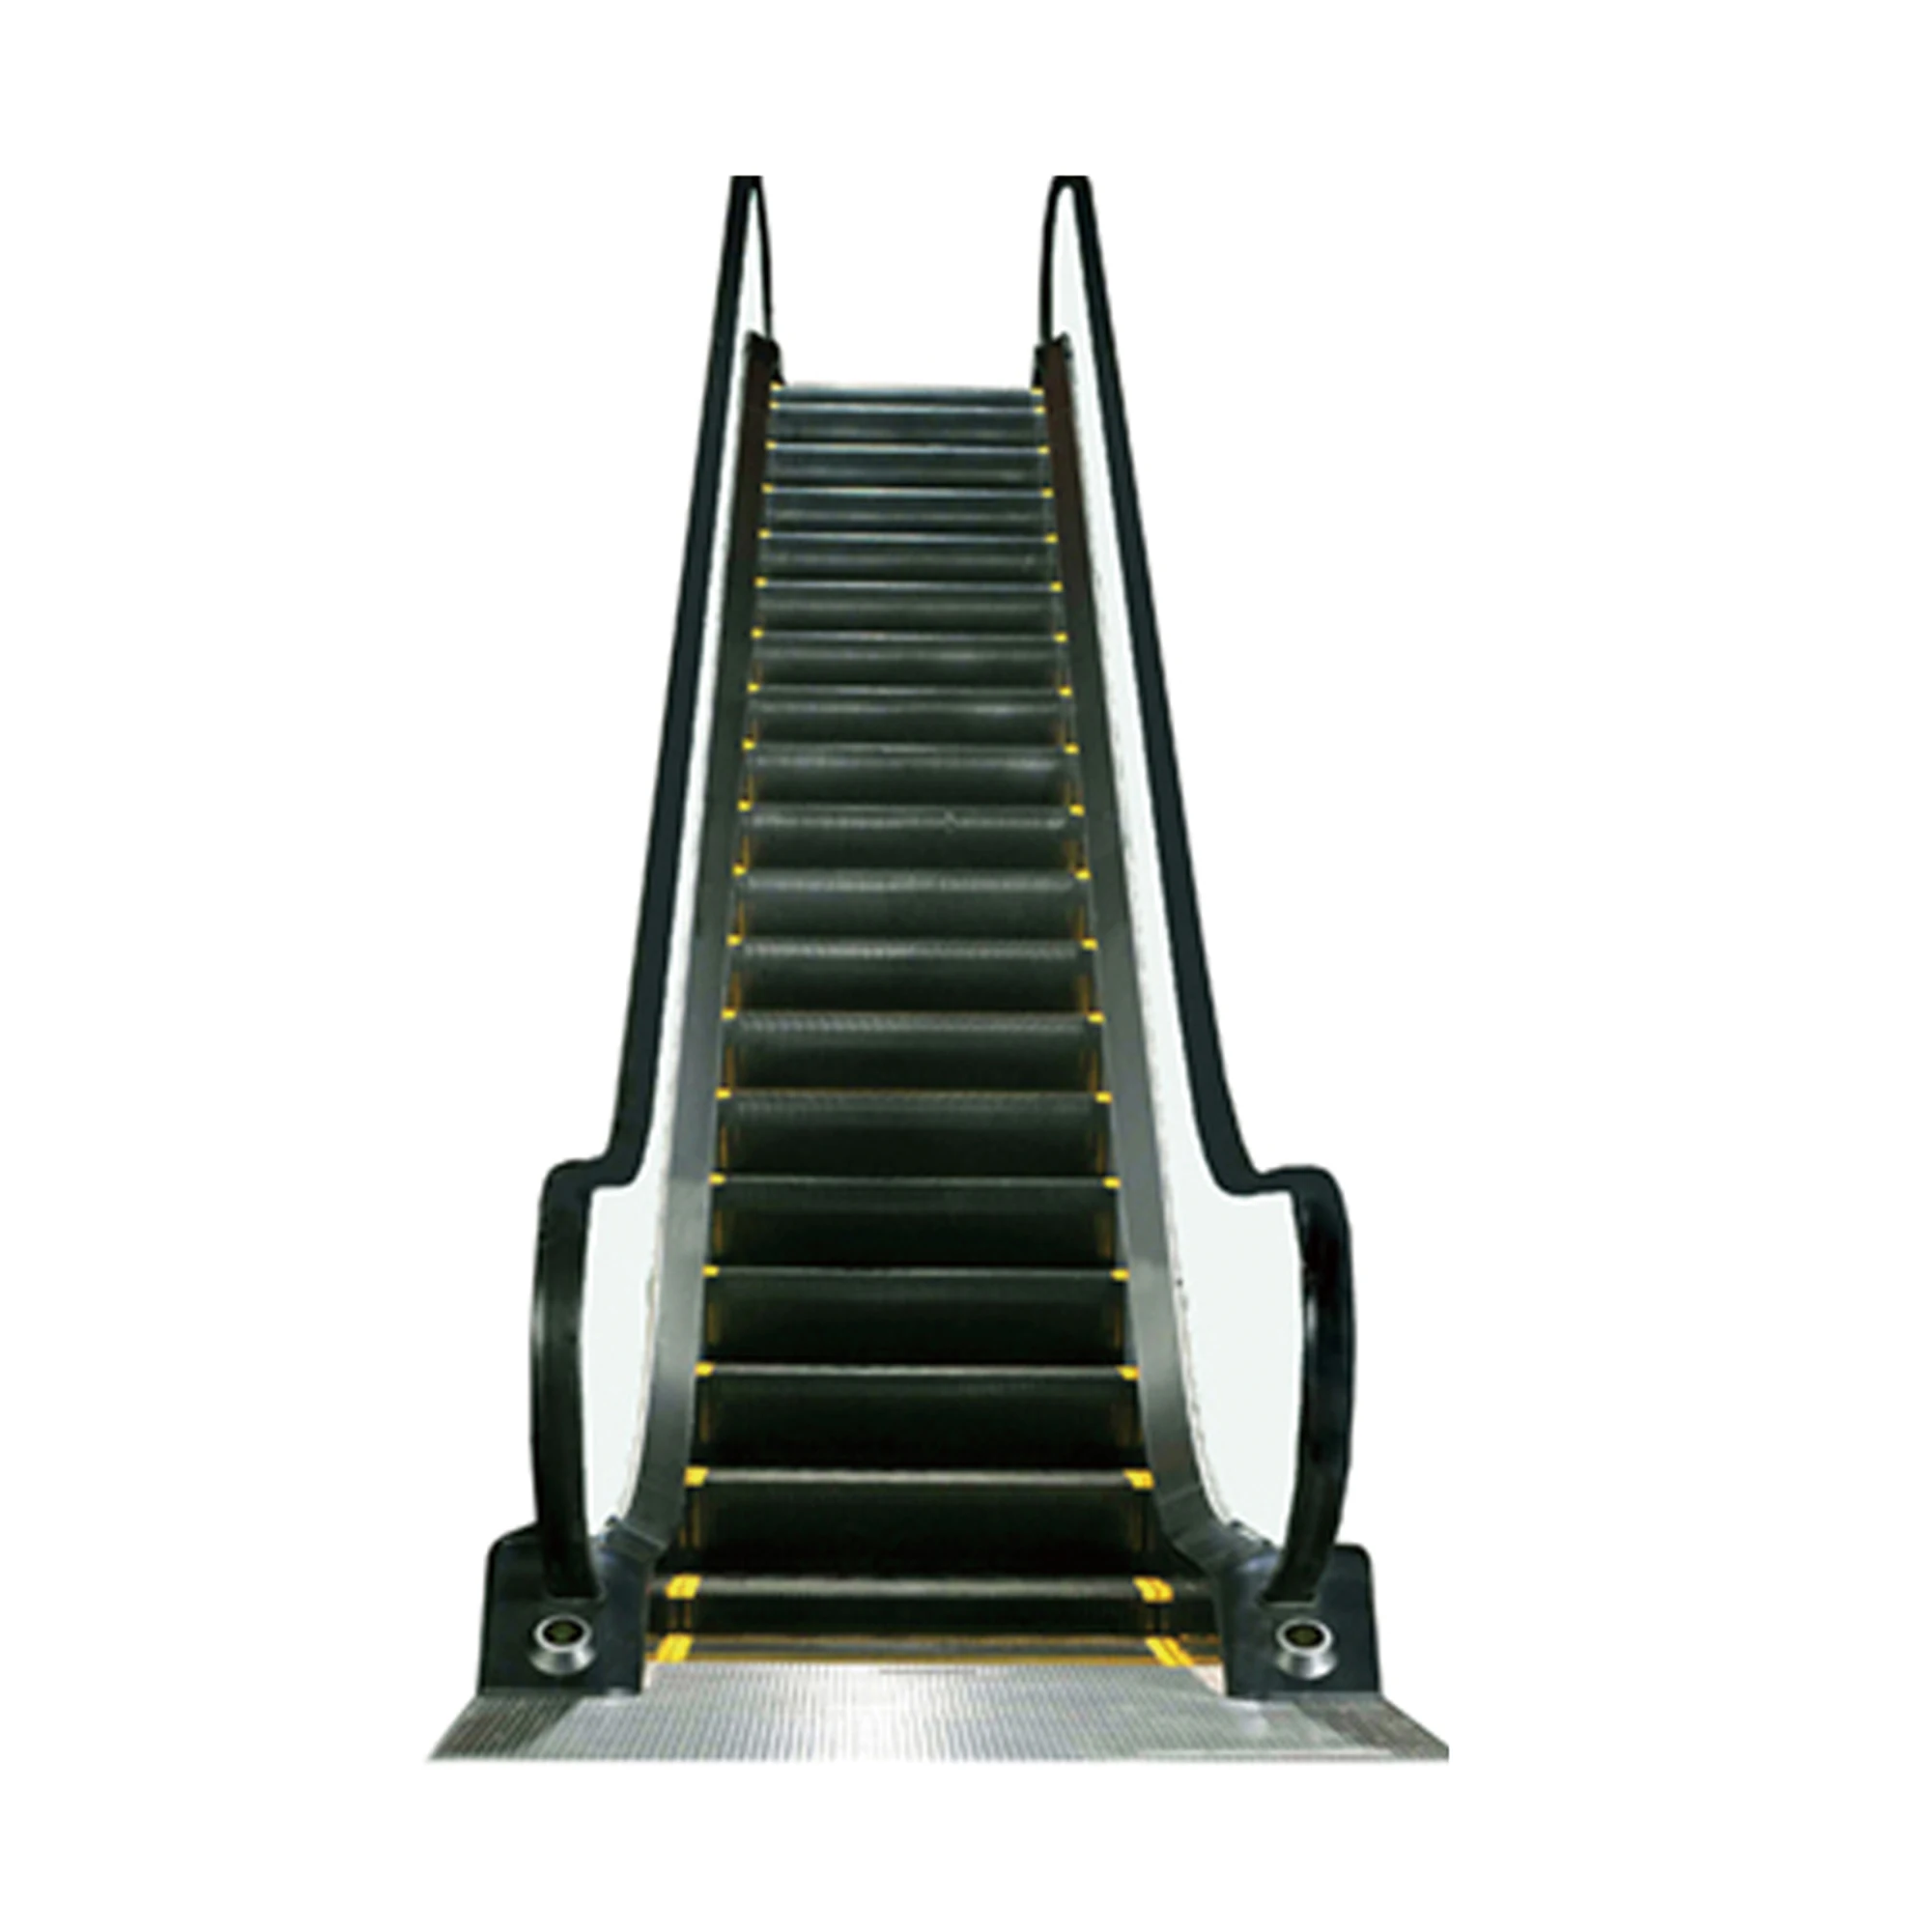 electric escalator elevators and escalators